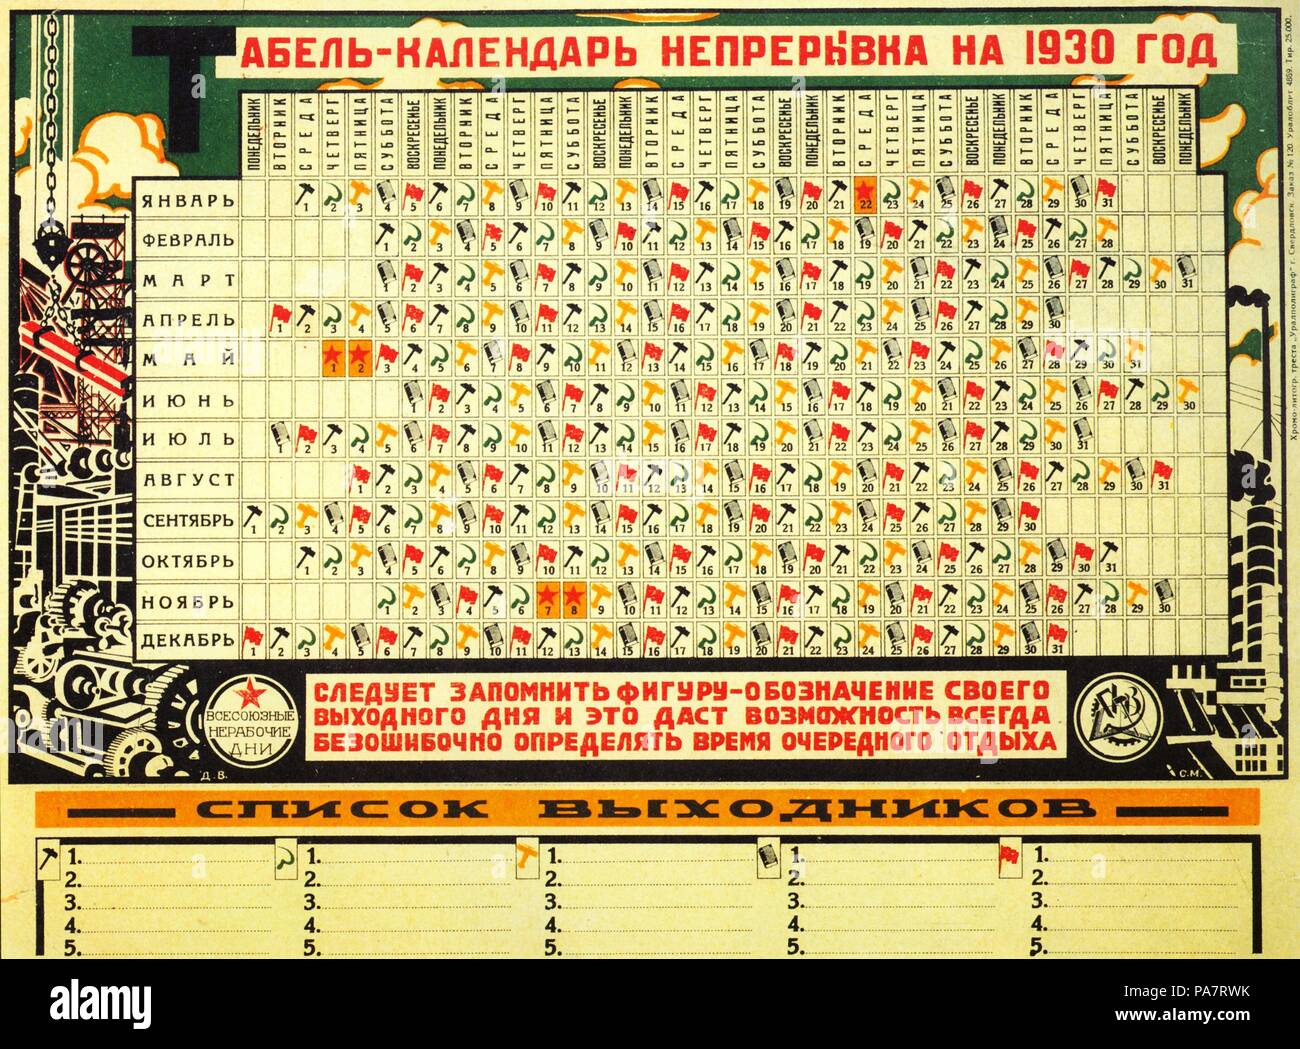 Calendrier 1930 soviétique avec cinq jours par semaine. Musée : Bibliothèque d'État de Russie, Moscou. Banque D'Images